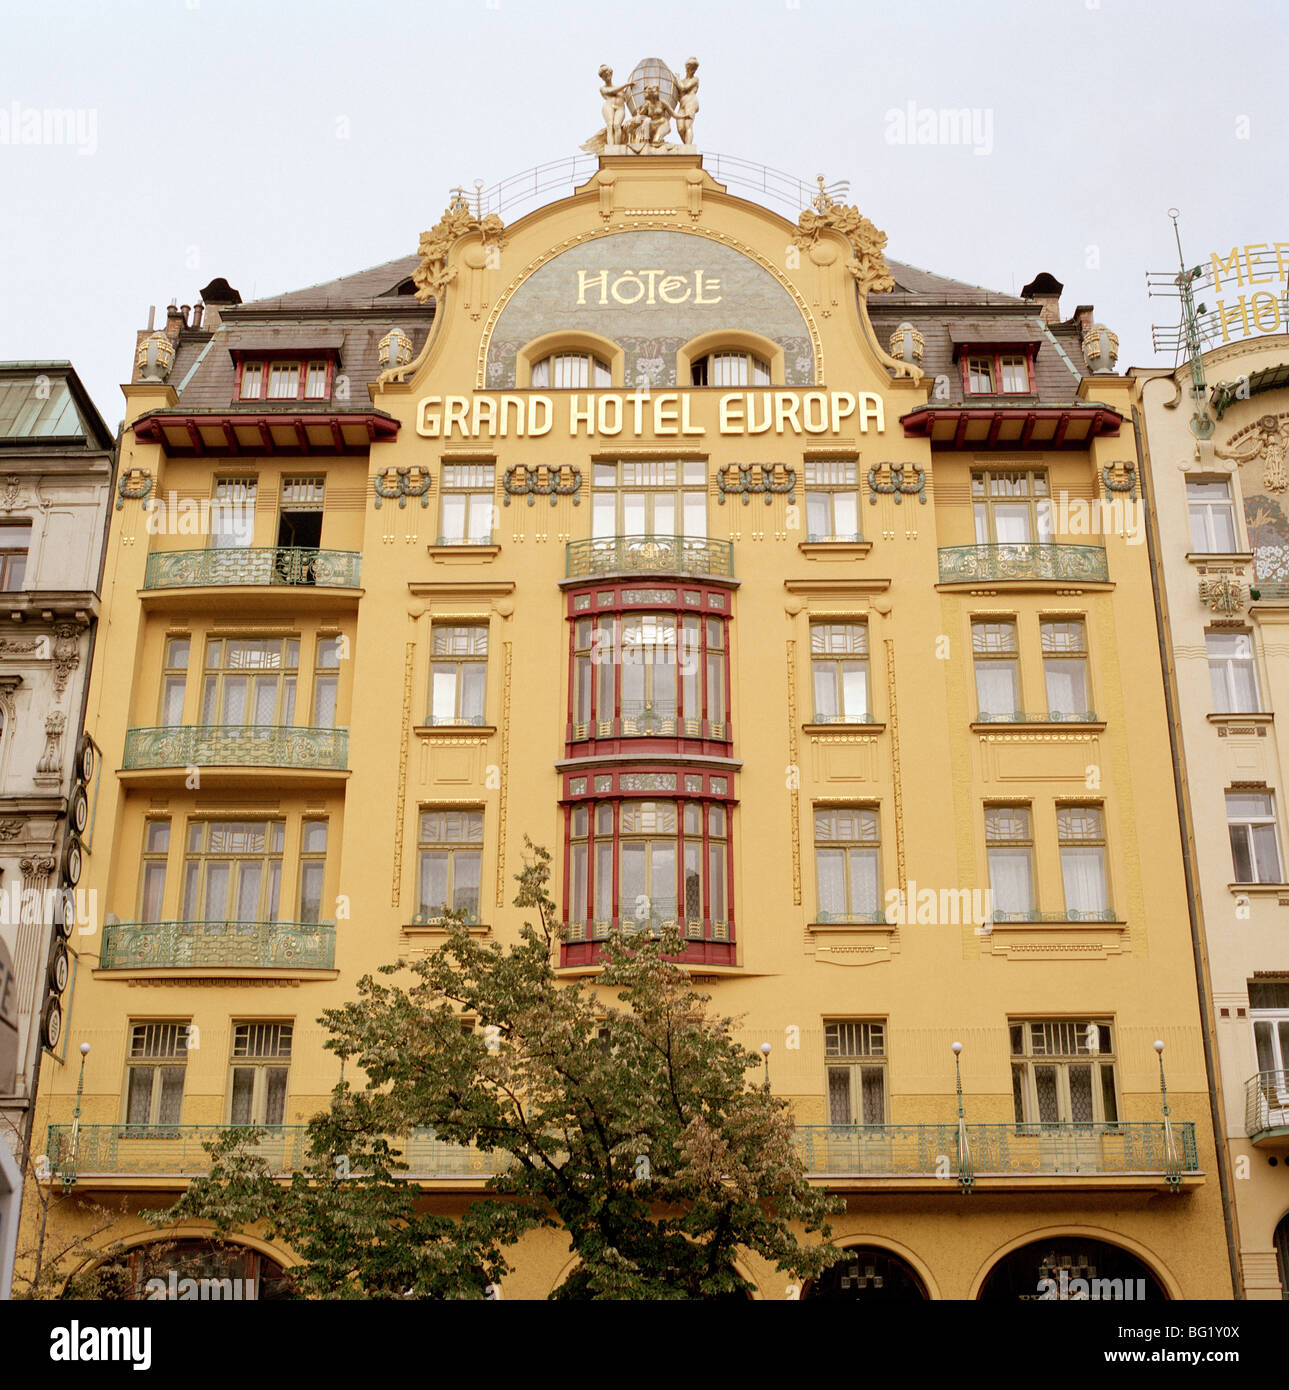 Welt zu reisen. Die Jugendstil-Architektur des Grand Hotel Europa am Wenzelsplatz in Prag in der Tschechischen Republik in Osteuropa. Stockfoto